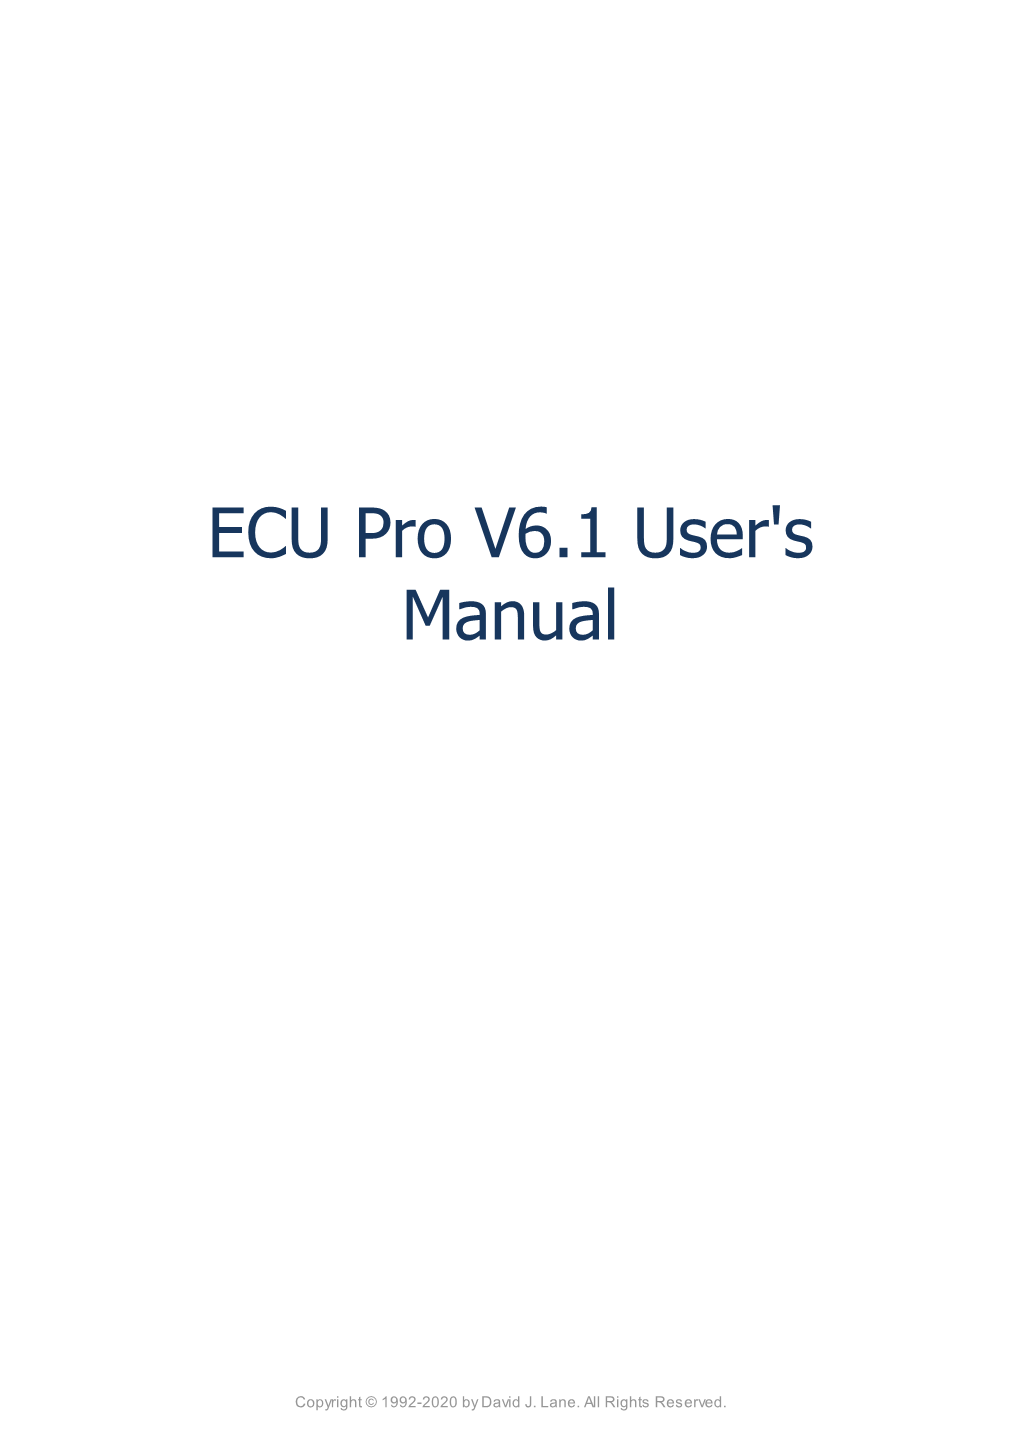 ECU Pro V6.1 User's Manual